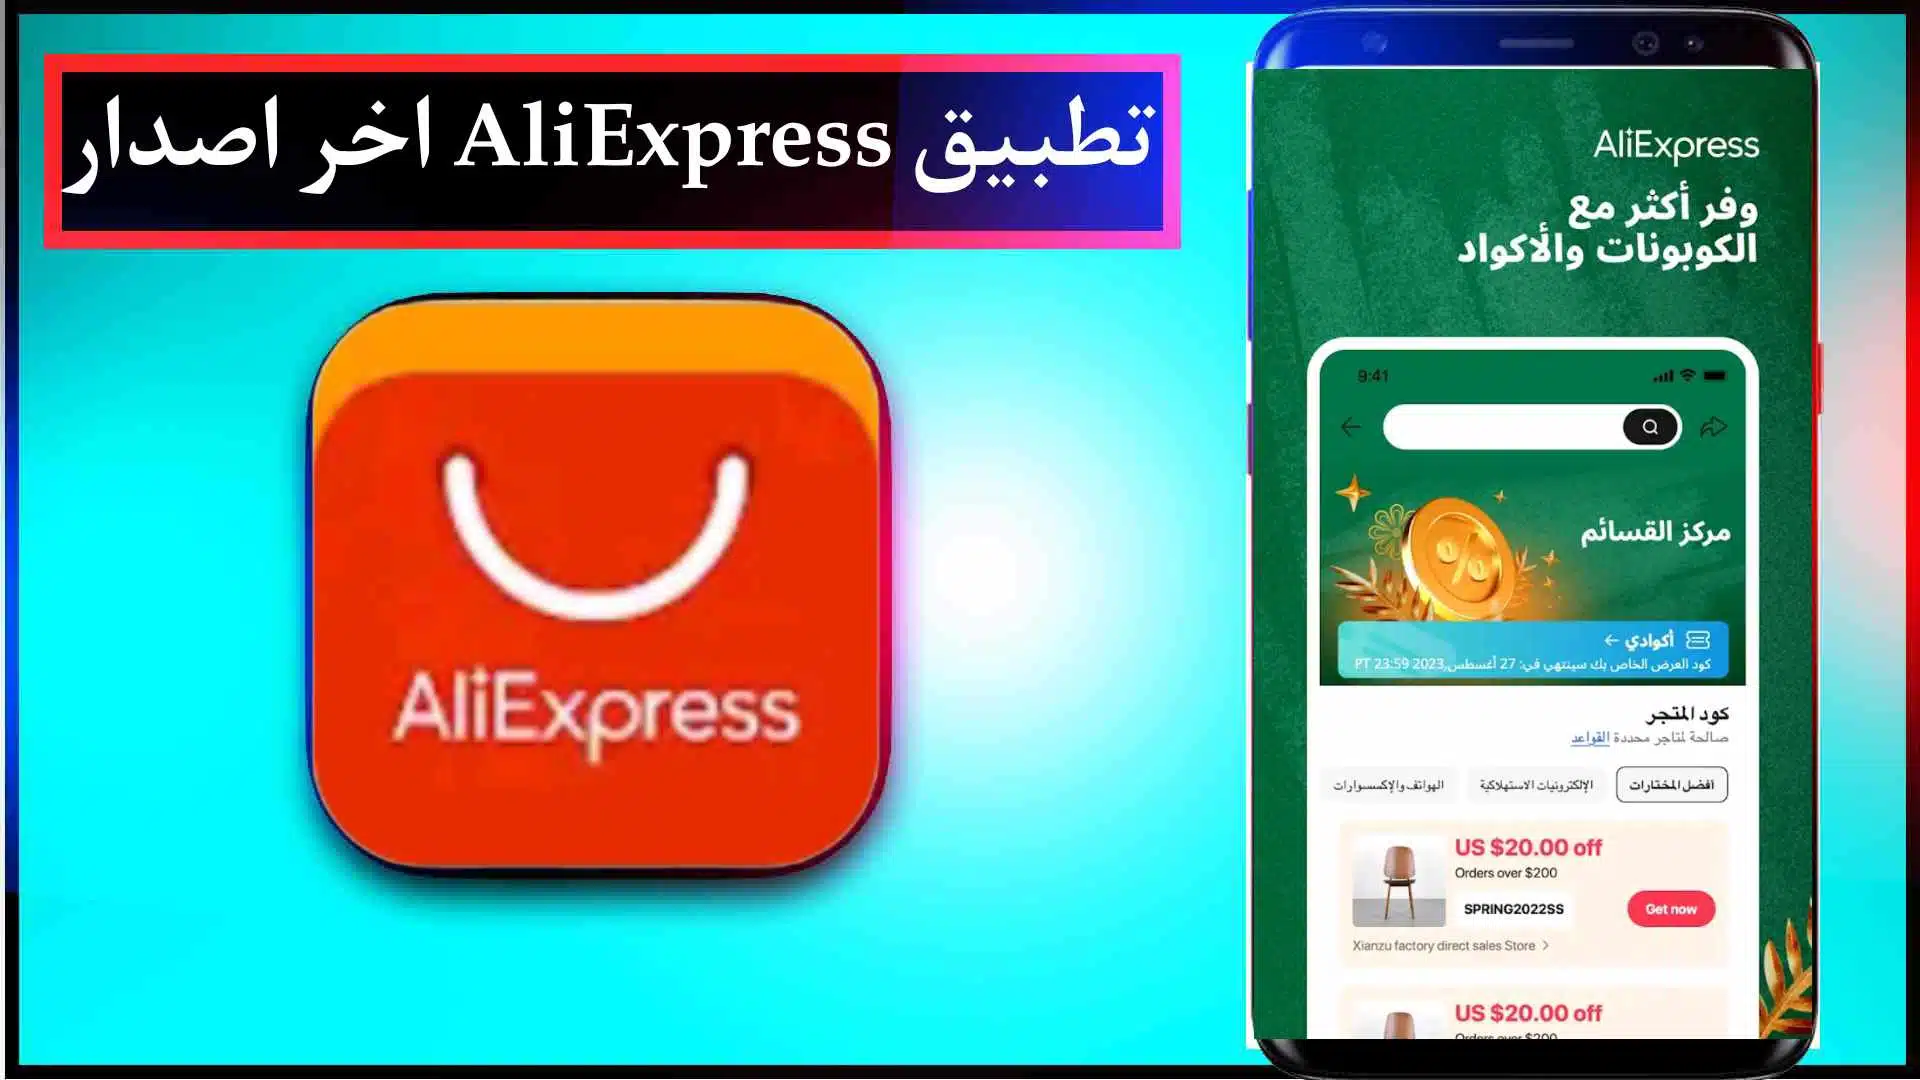 تحميل تطبيق AliExpress علي اكسبرس بالعربي للايفون وللاندرويد اخر اصدار 2